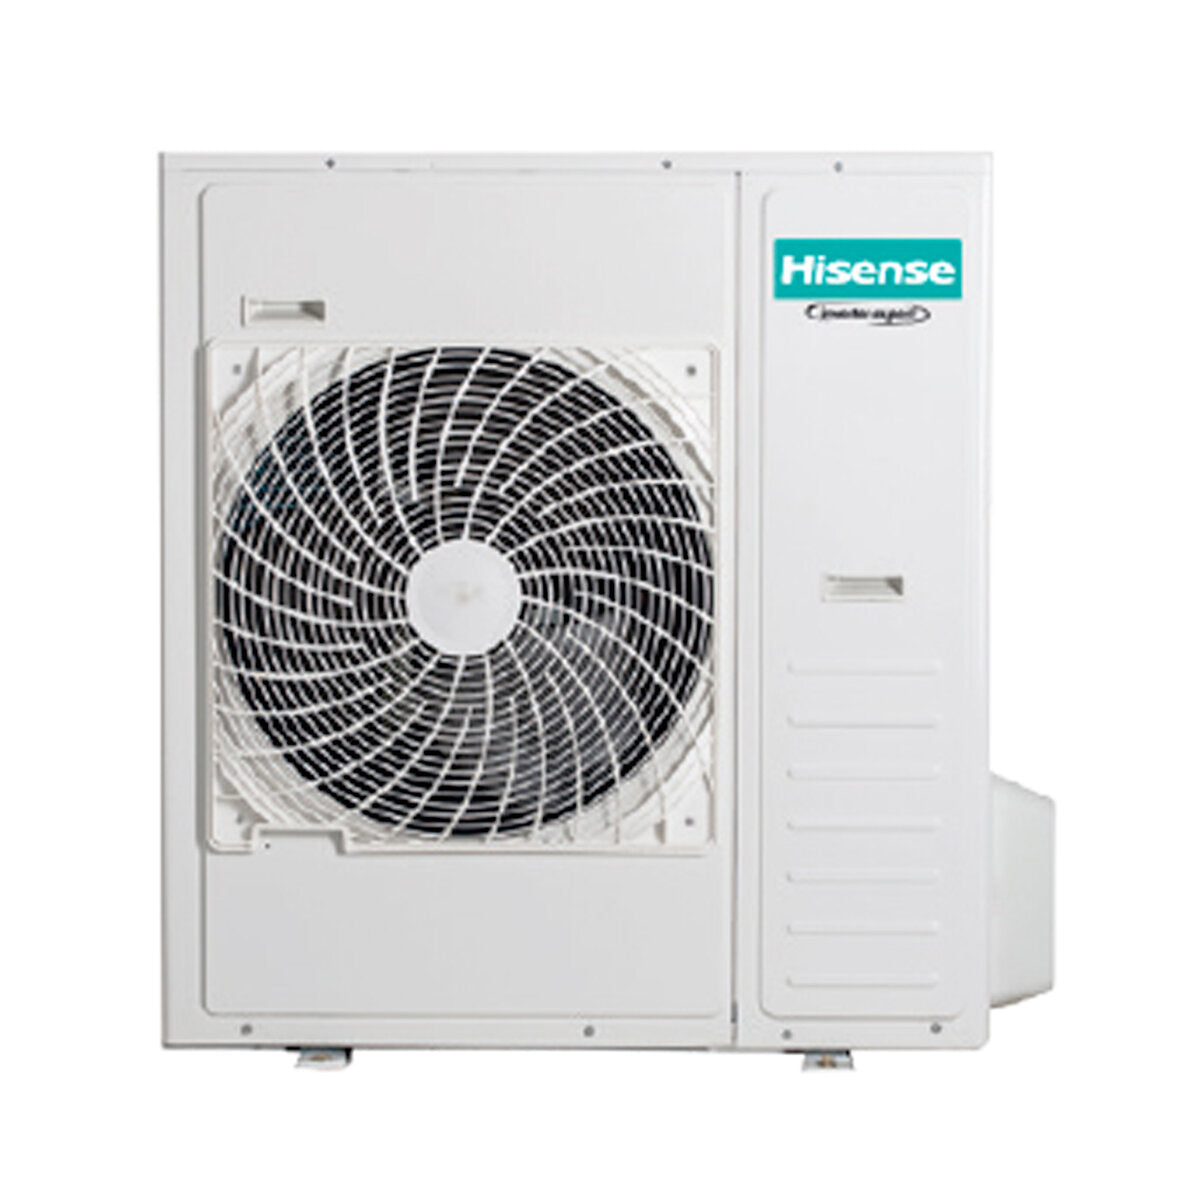 Hisense Hi-Comfort penta climatiseur split 9000+9000+9000+12000+12000 BTU wifi inverter unité extérieure 12,5 kW